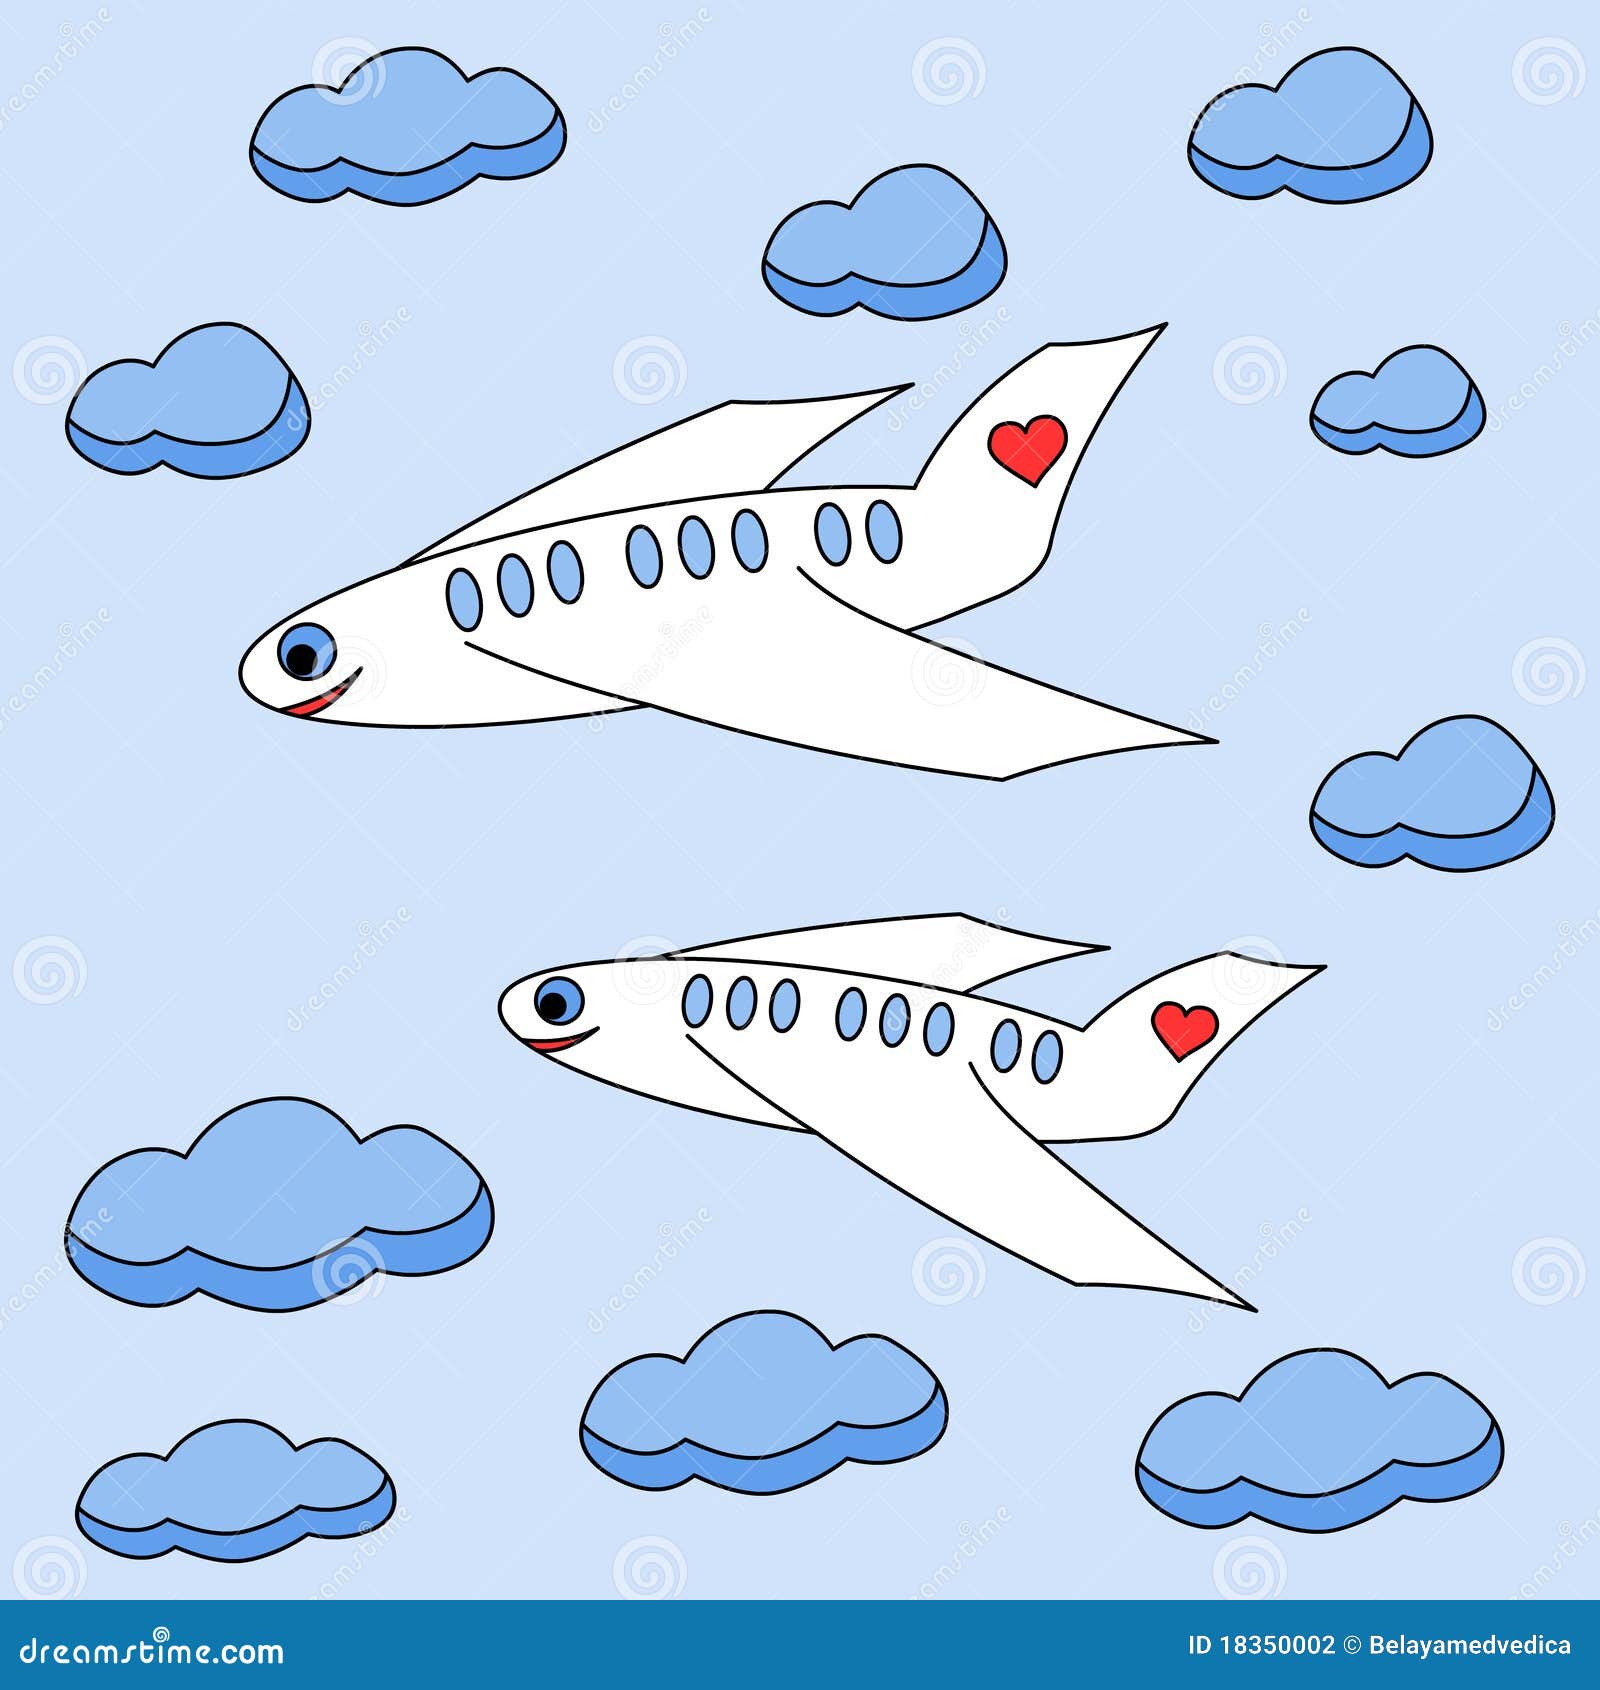 Рисование самолеты летят облаках средней группы. Рисование самолет средняя группа. Рисование самолеты летят сквозь облака. Рисование в средне группе «самолёты летят сквозь облака». Рисование самолет в средней группе карандашами.